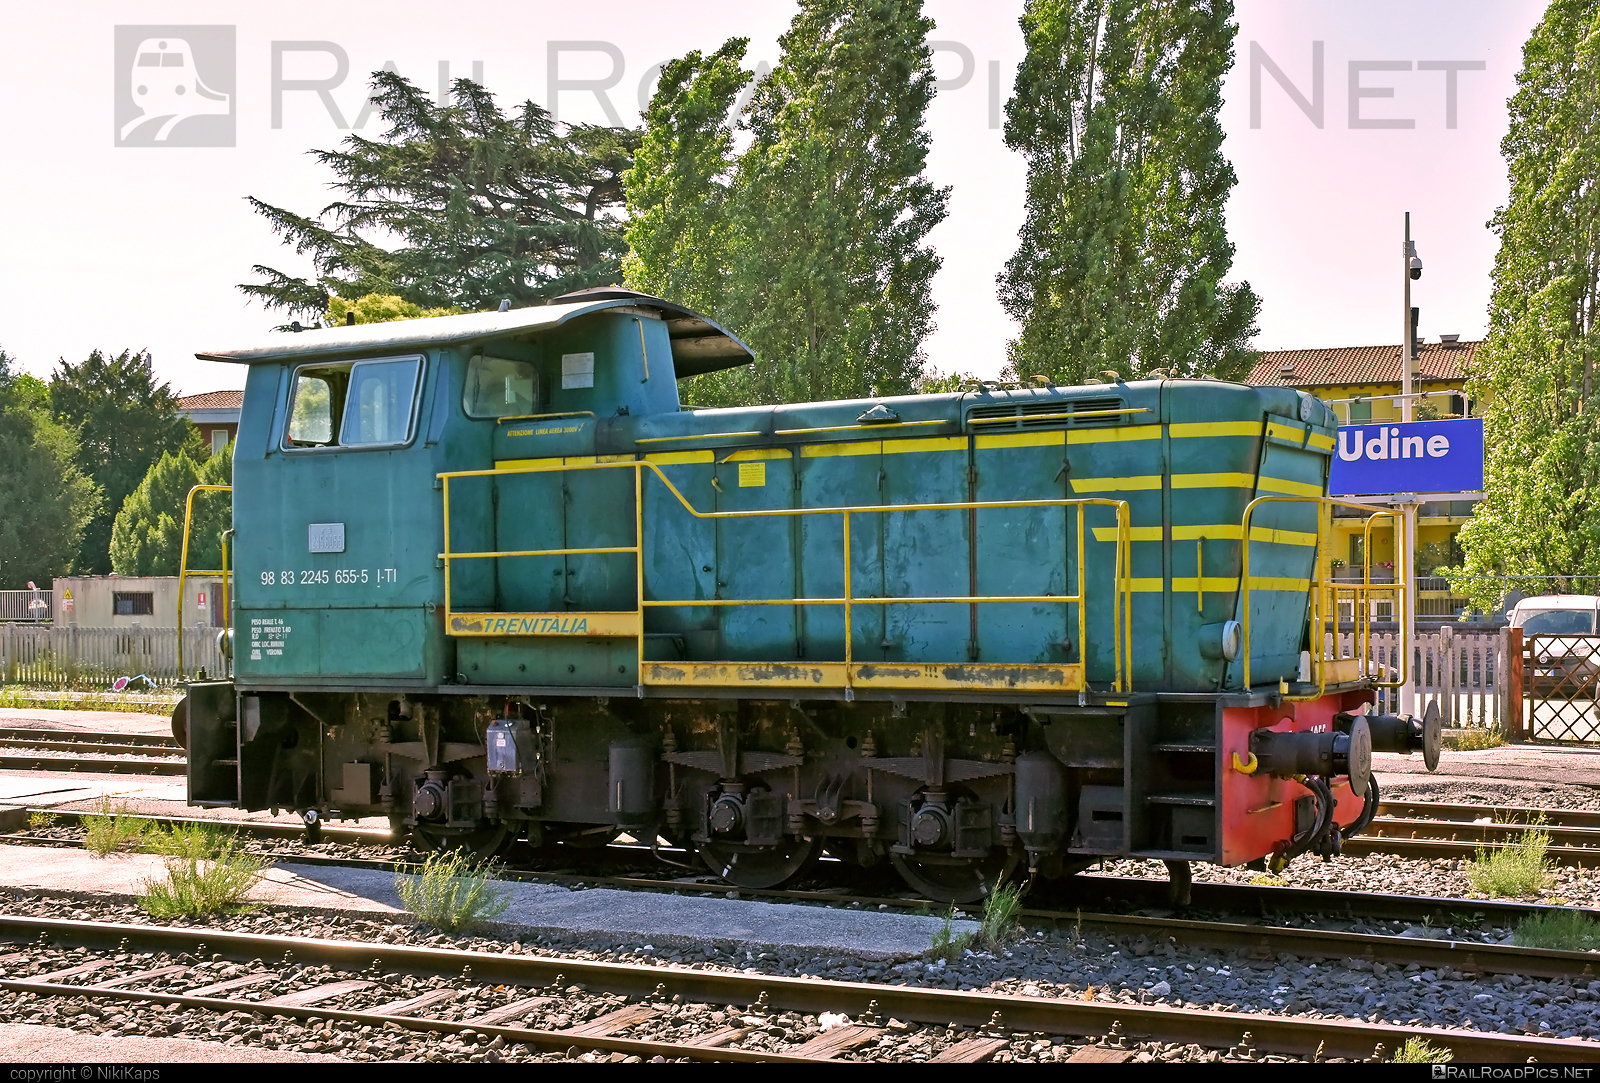 FS Class D.245 - D 245.6055 operated by Trenitalia S.p.A. #d245 #ferroviedellostato #fs #fsClassD245 #fsitaliane #trenitalia #trenitaliaspa